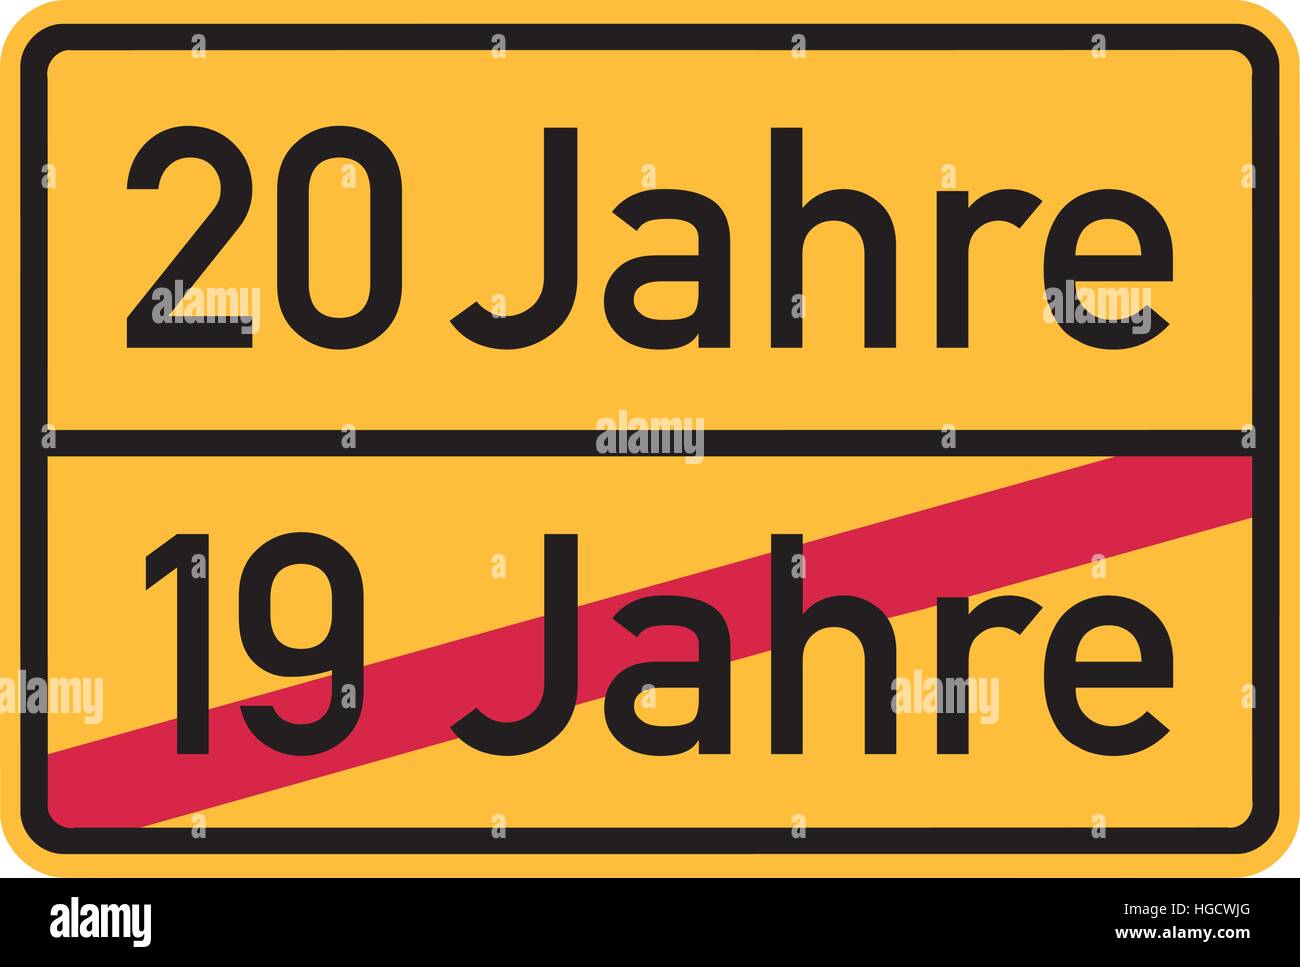 Ventesimo compleanno - cartello stradale tedesco Illustrazione Vettoriale